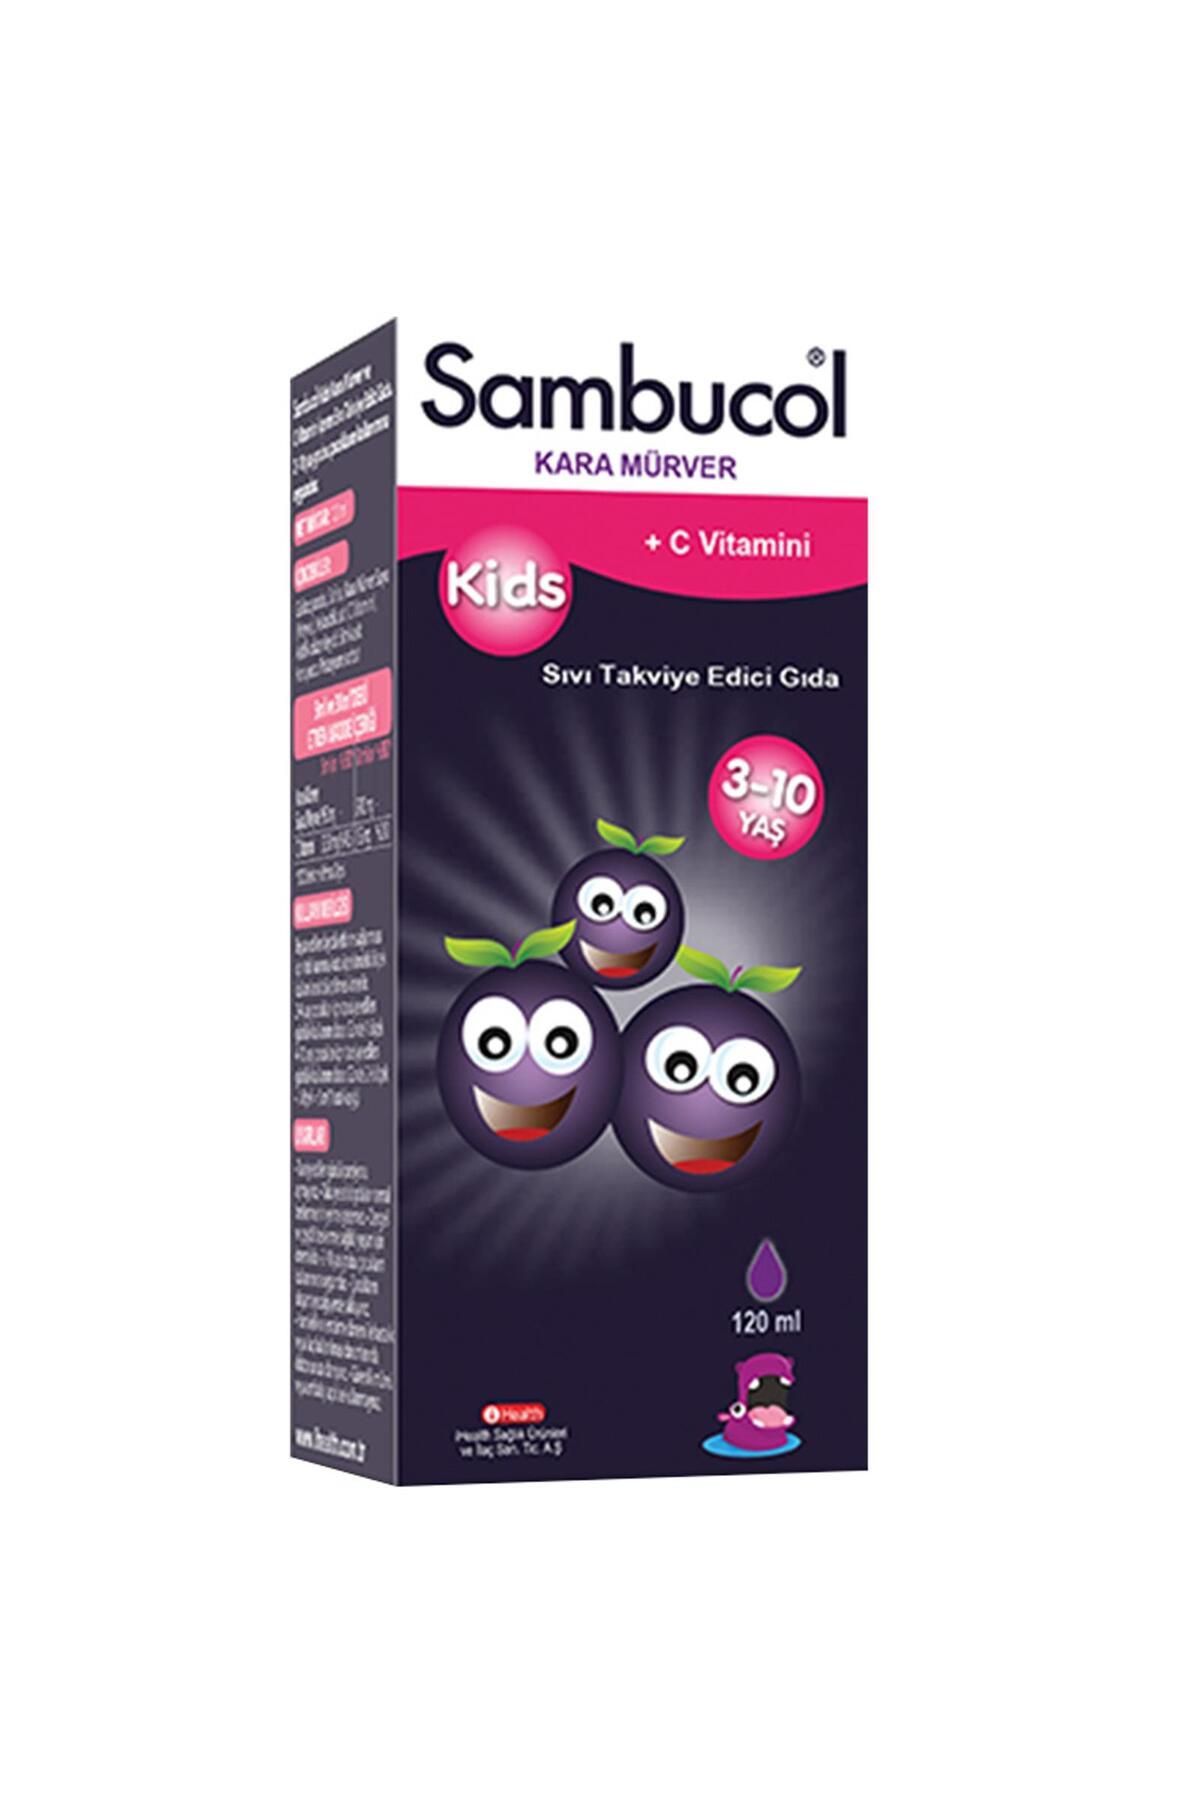 Sambucol Kids Kara Mürver Ve C Vitamini Içeren Sıvı Takviye Edici Gıda 120 ml